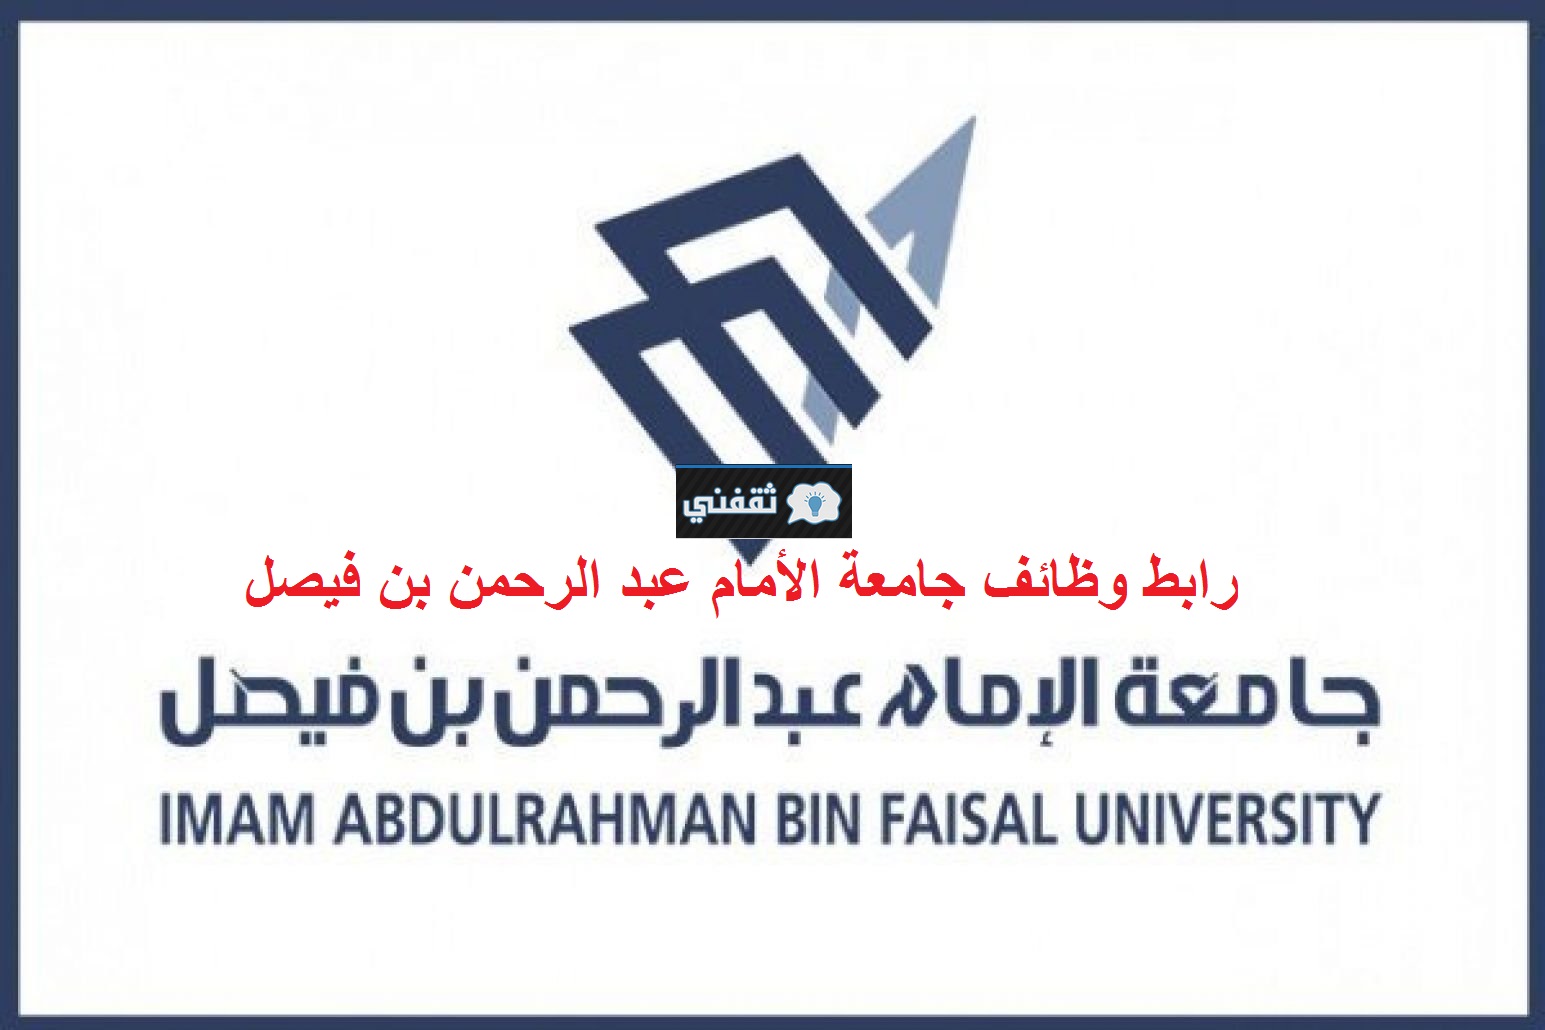 التقديم على وظائف جامعة الإمام عبدالرحمن بن فيصل 1444 للرجال والنساء